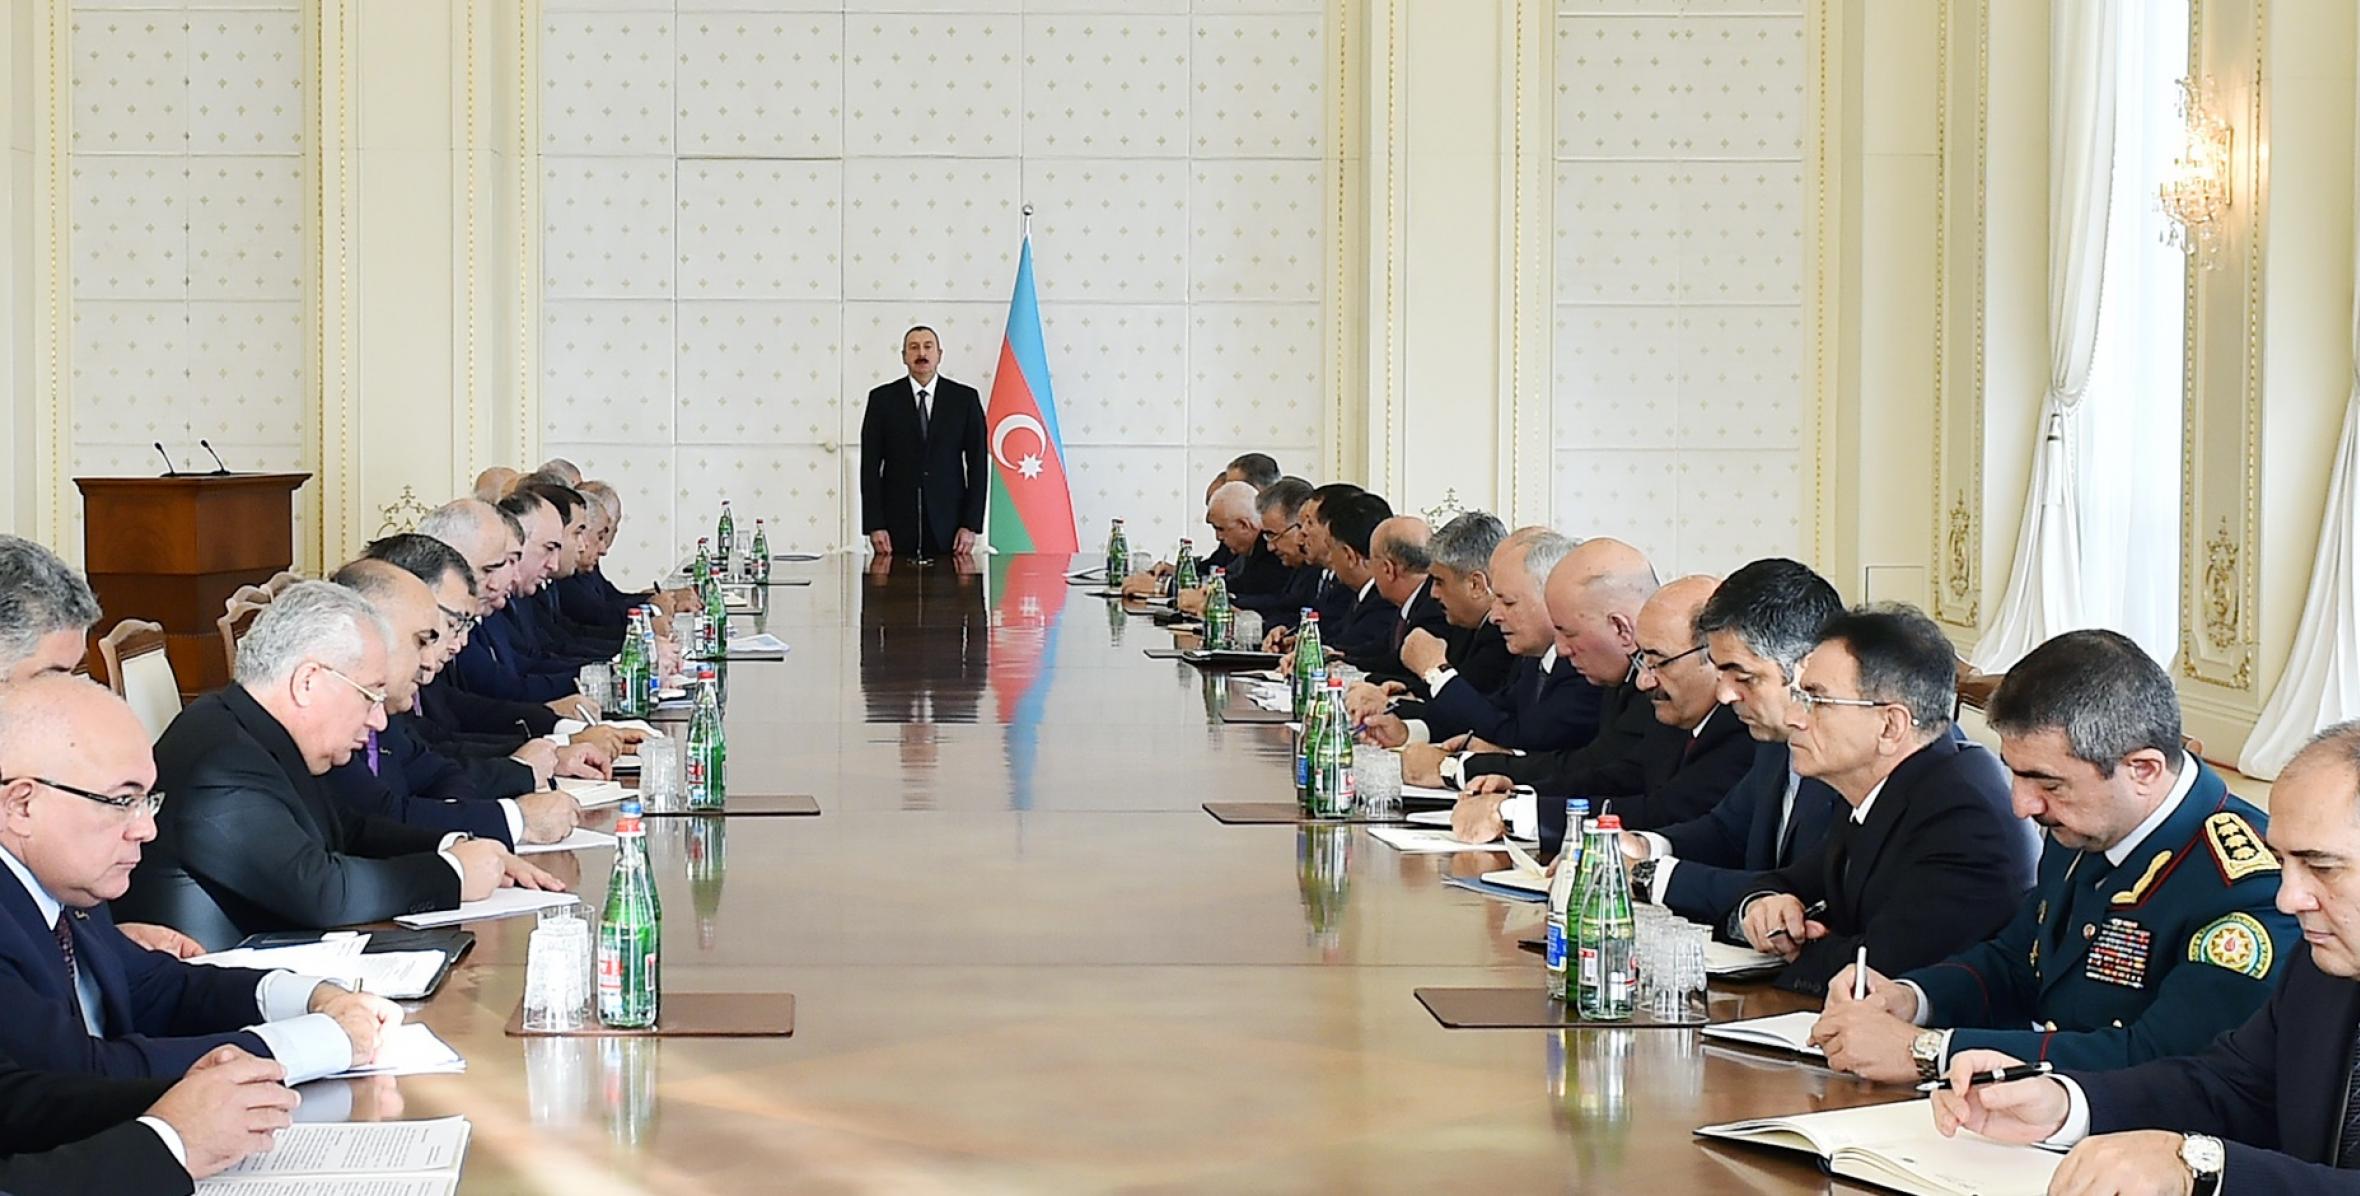 Вступительная речь Ильхама Алиева на заседании Кабинета Министров, посвященное итогам социально-экономического развития девяти месяцев 2017 года и предстоящим задачам